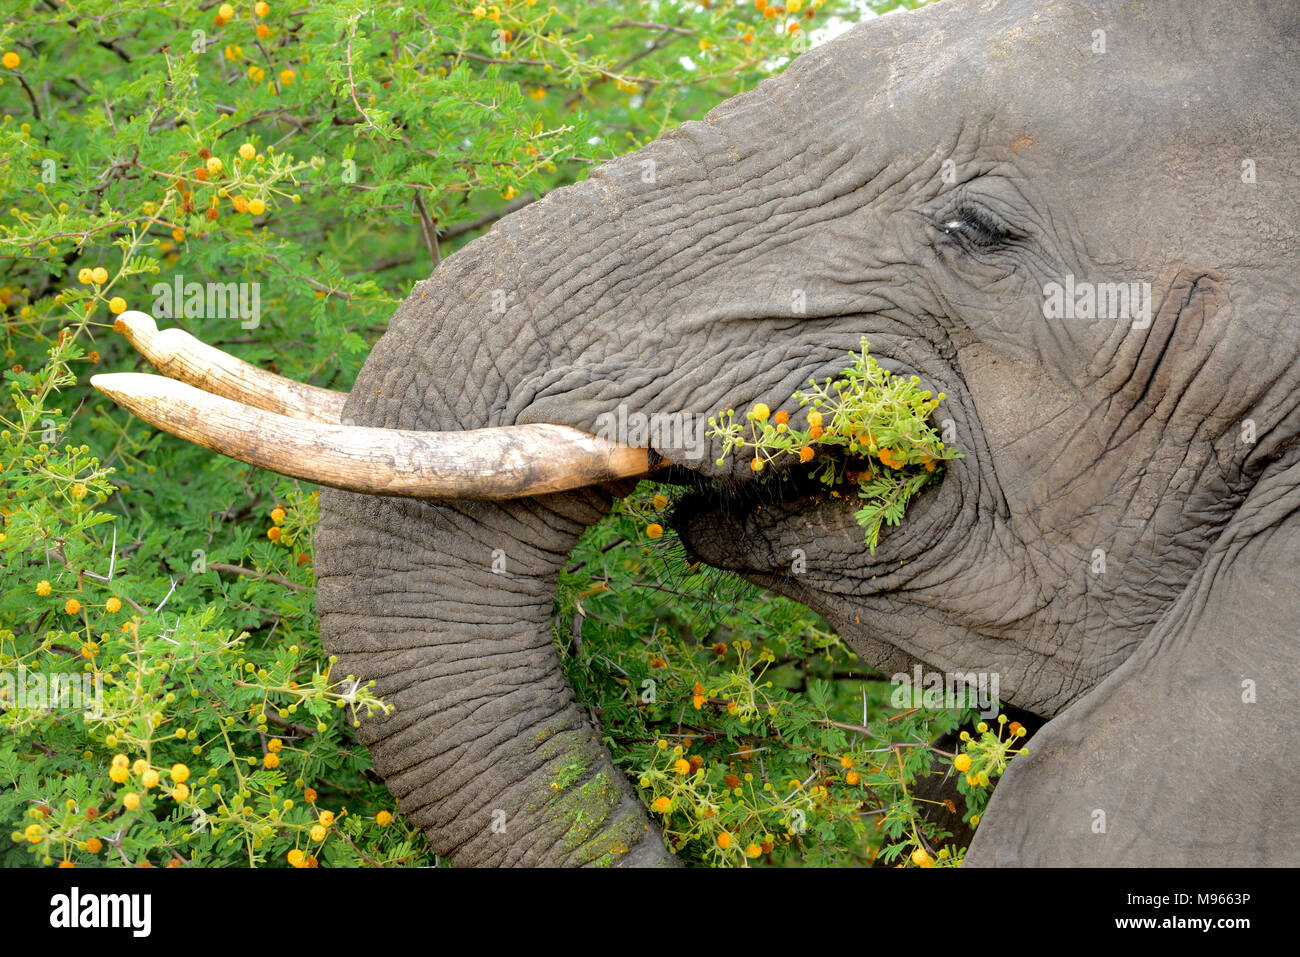 L'Afrique du Sud est une destination touristique populaire pour son mélange de vrai et de l'Afrique de l'expérience. Kruger Park elephant acacia manger des épines. Banque D'Images